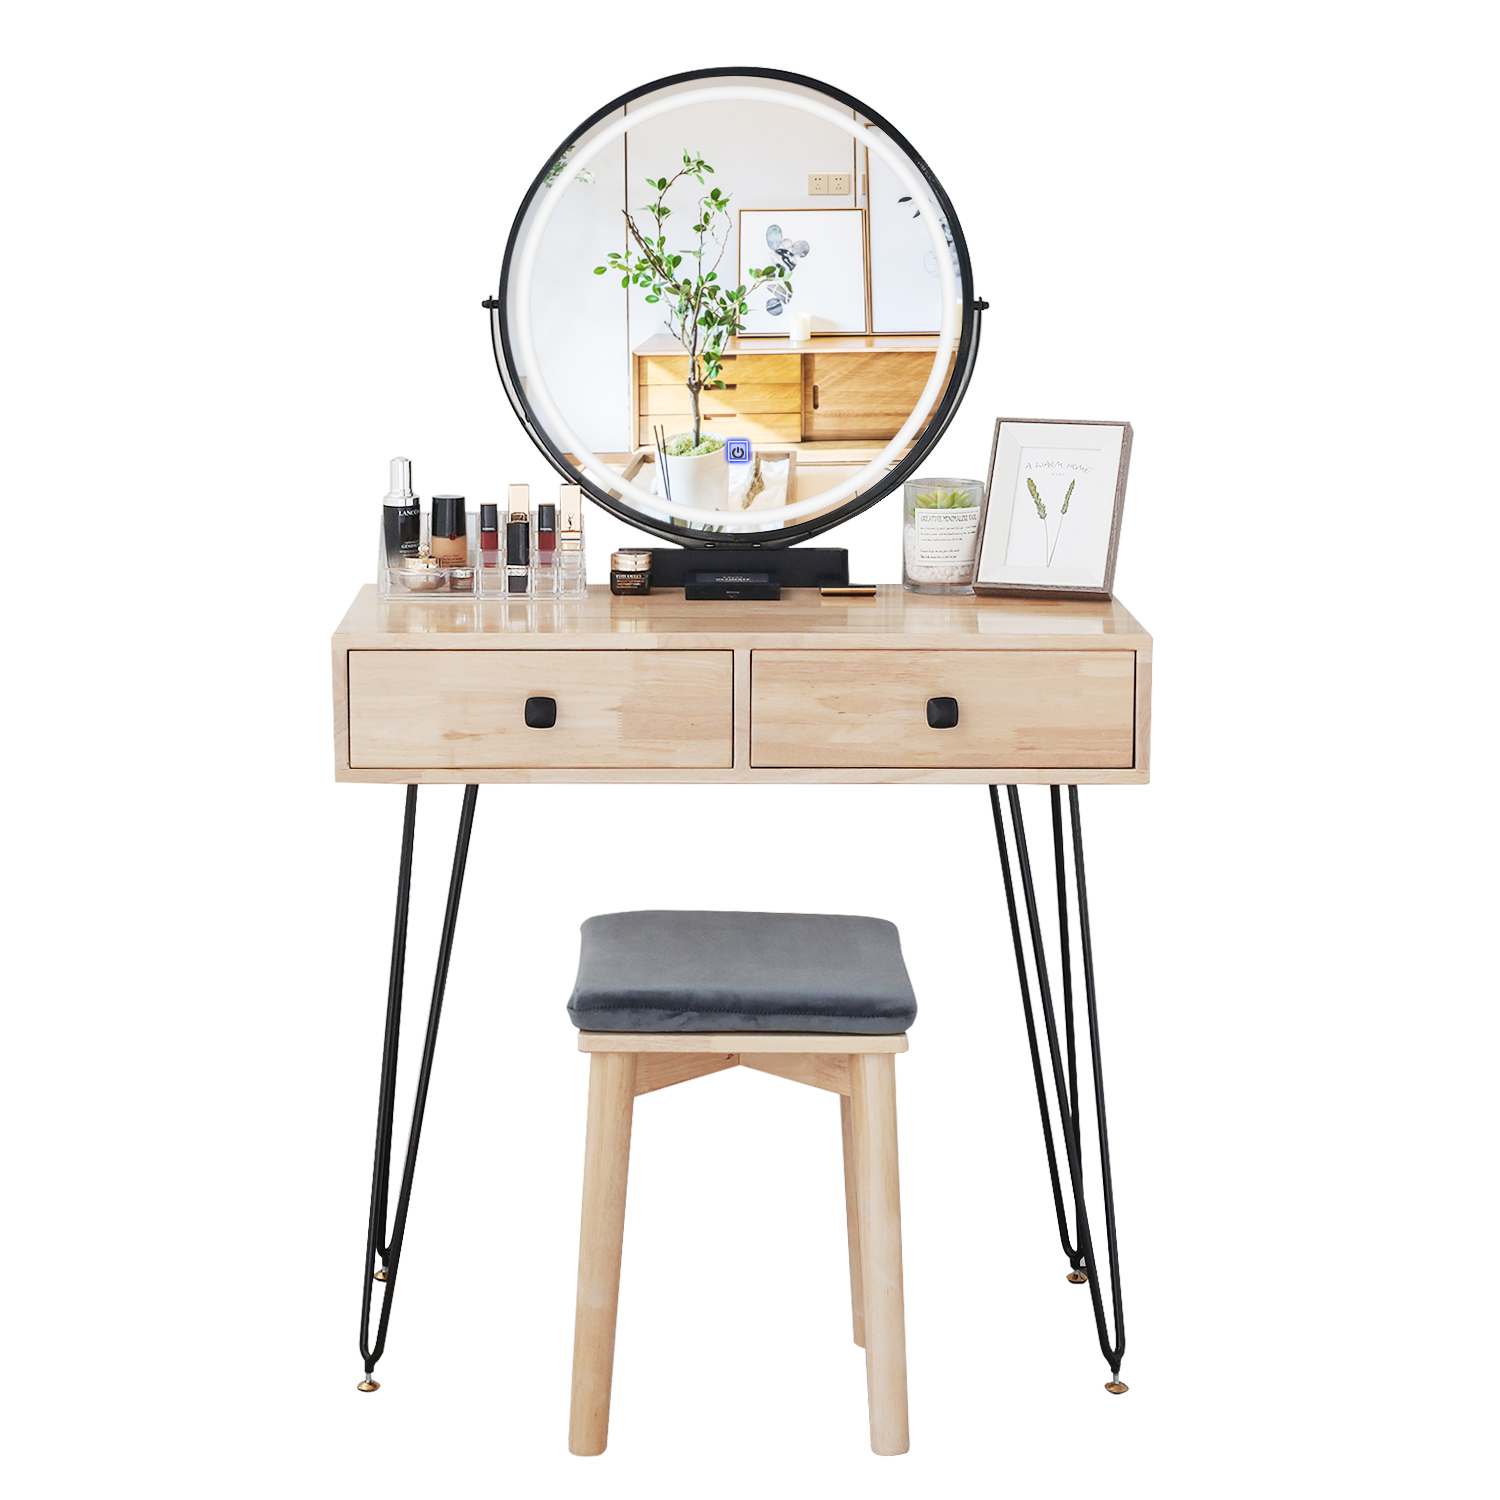 HW1105 Adjustable Color Temperature Vanity Desk with Mirror